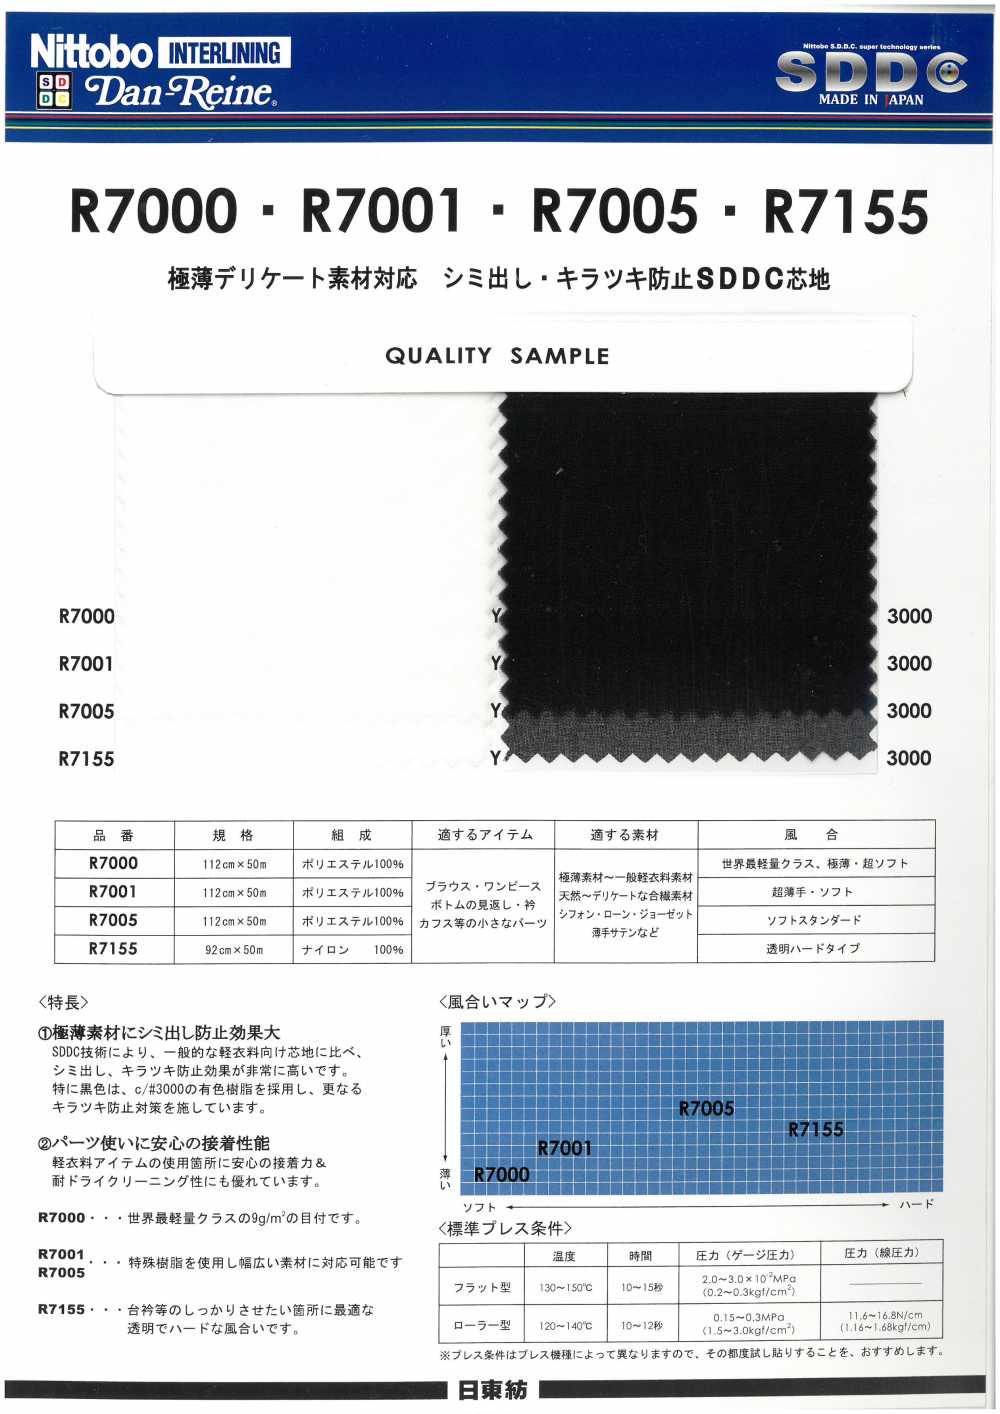 R7005 Ultra-mince Matériau Délicat Compatible SDDC Interlining Soft Standard Pour éviter Les Taches Et Les[Entoilage] Nittobo